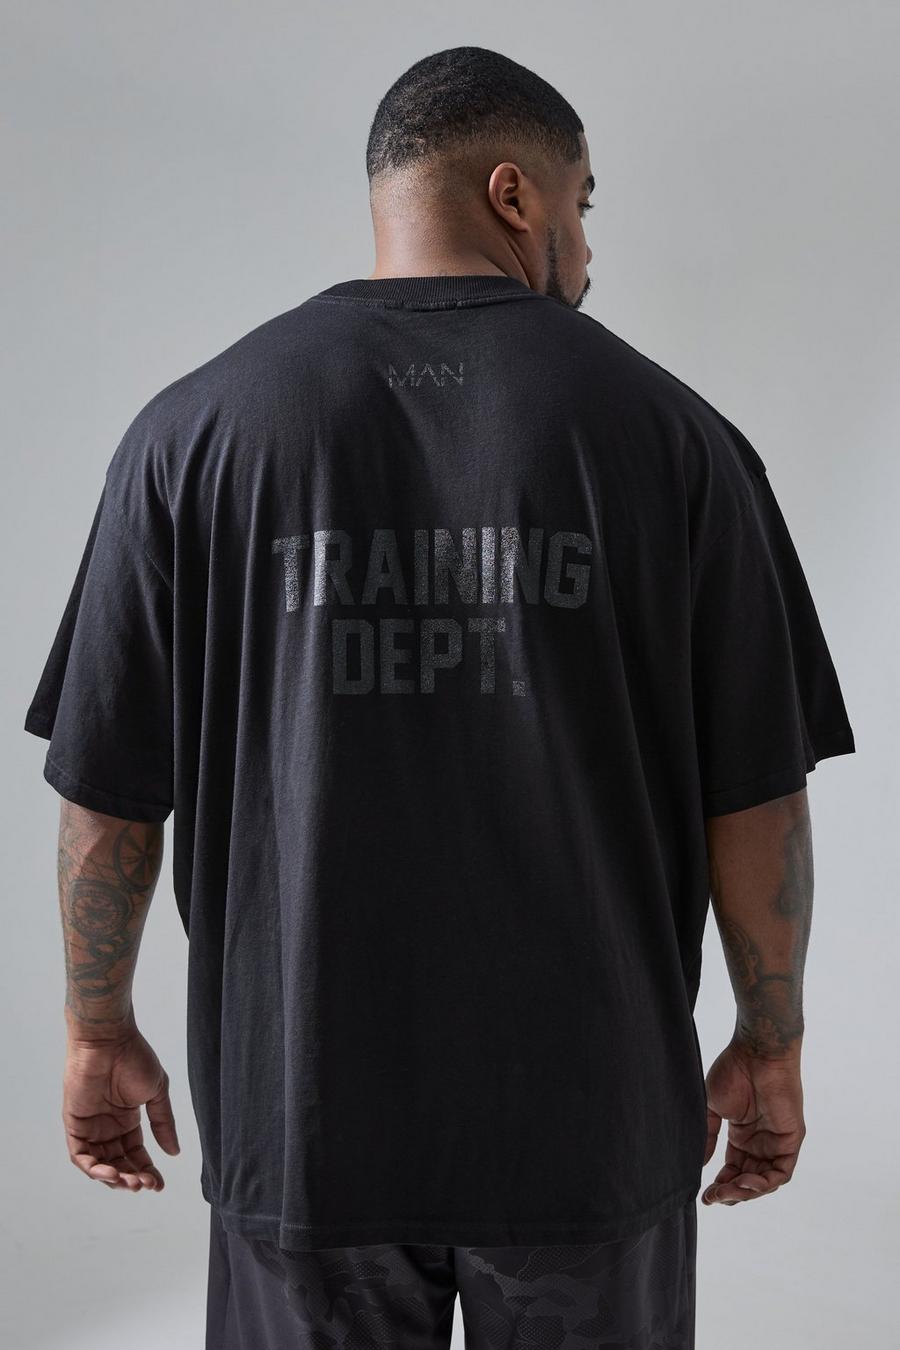 Plus Oversize Active Trainings Dept T-Shirt, Black